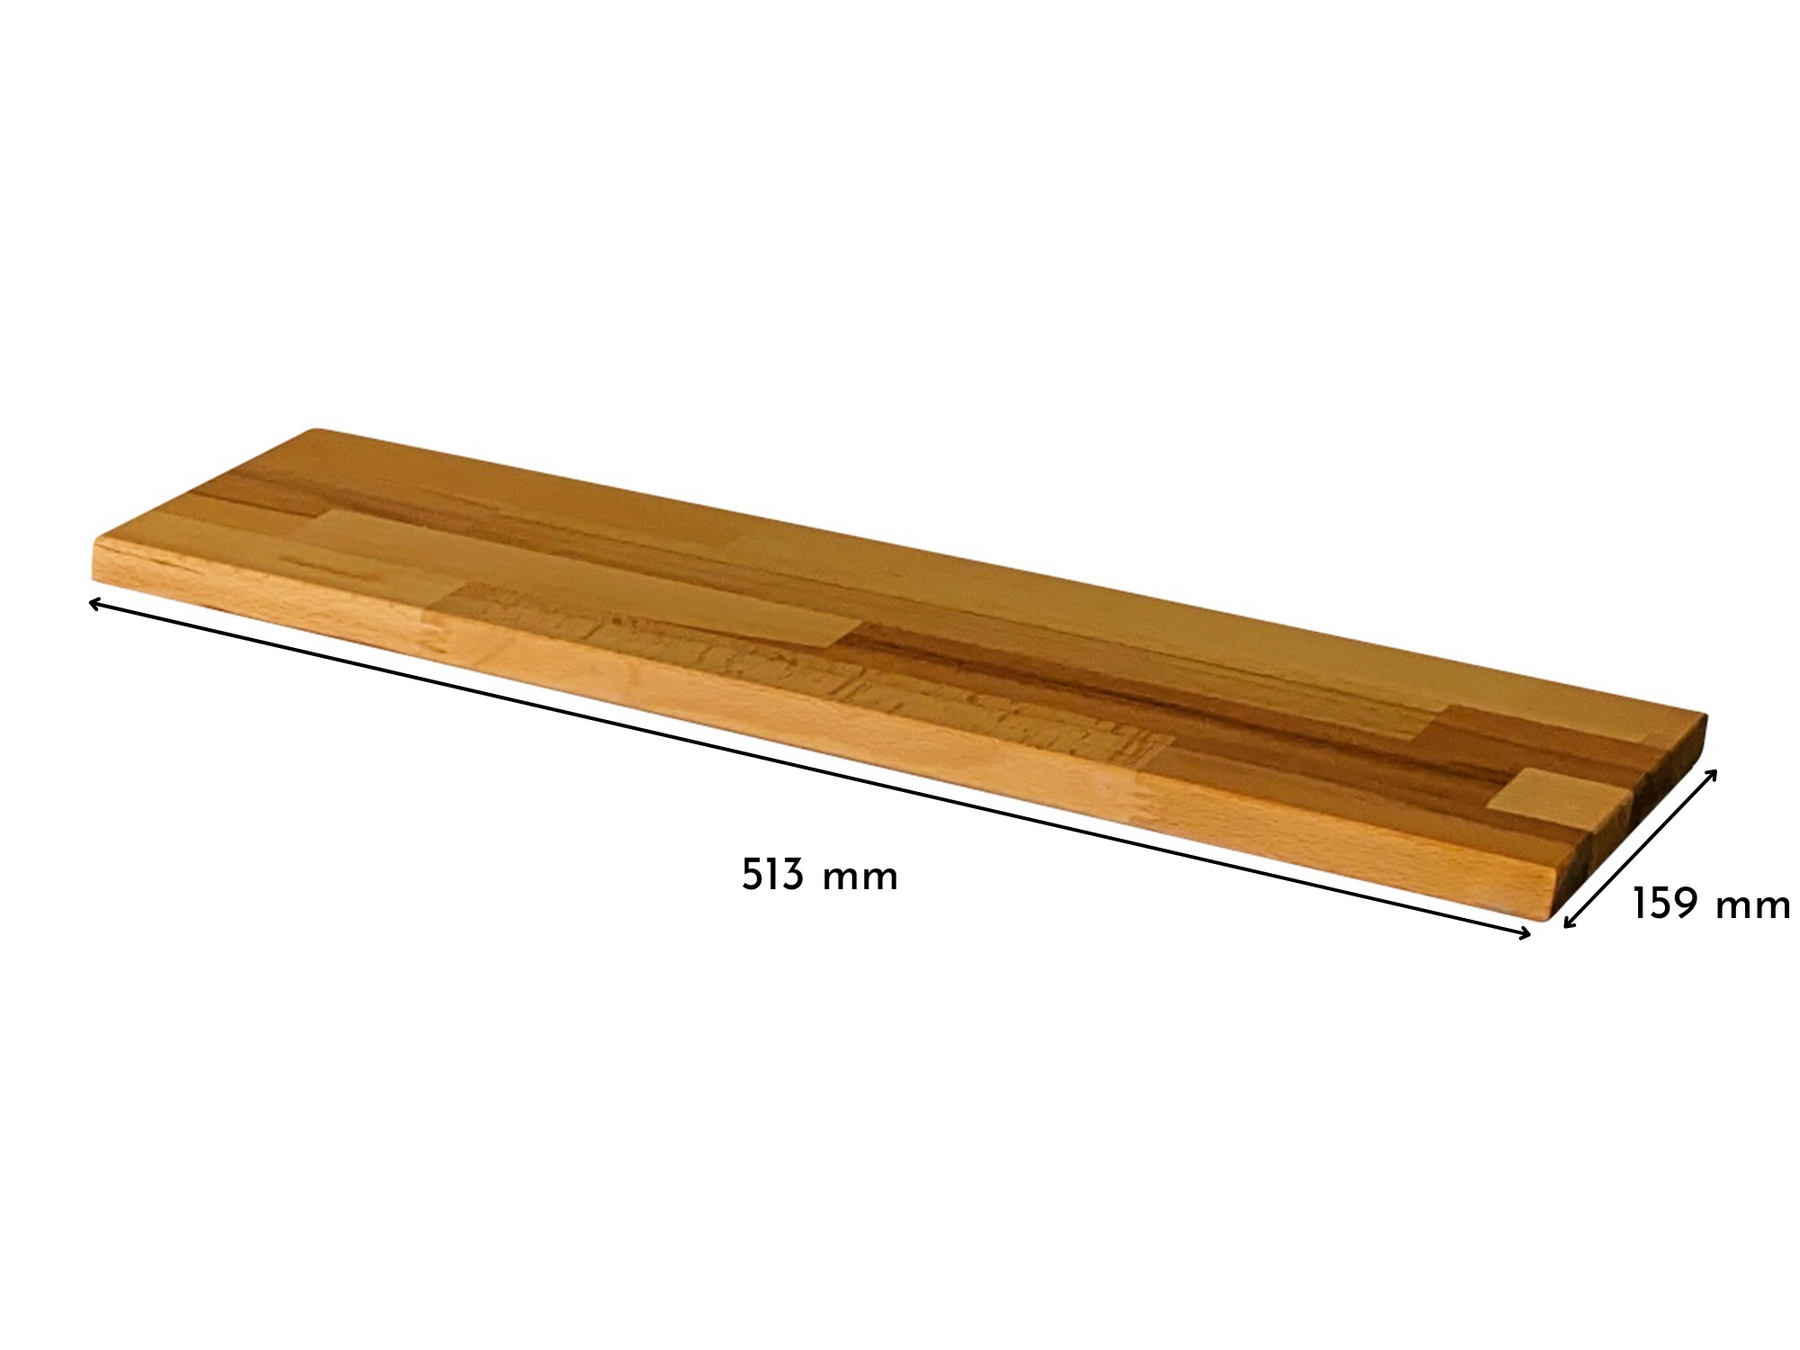 Deckplatte in Kernbuche für Ikea Trones Schuhschrank 1 Fach breit